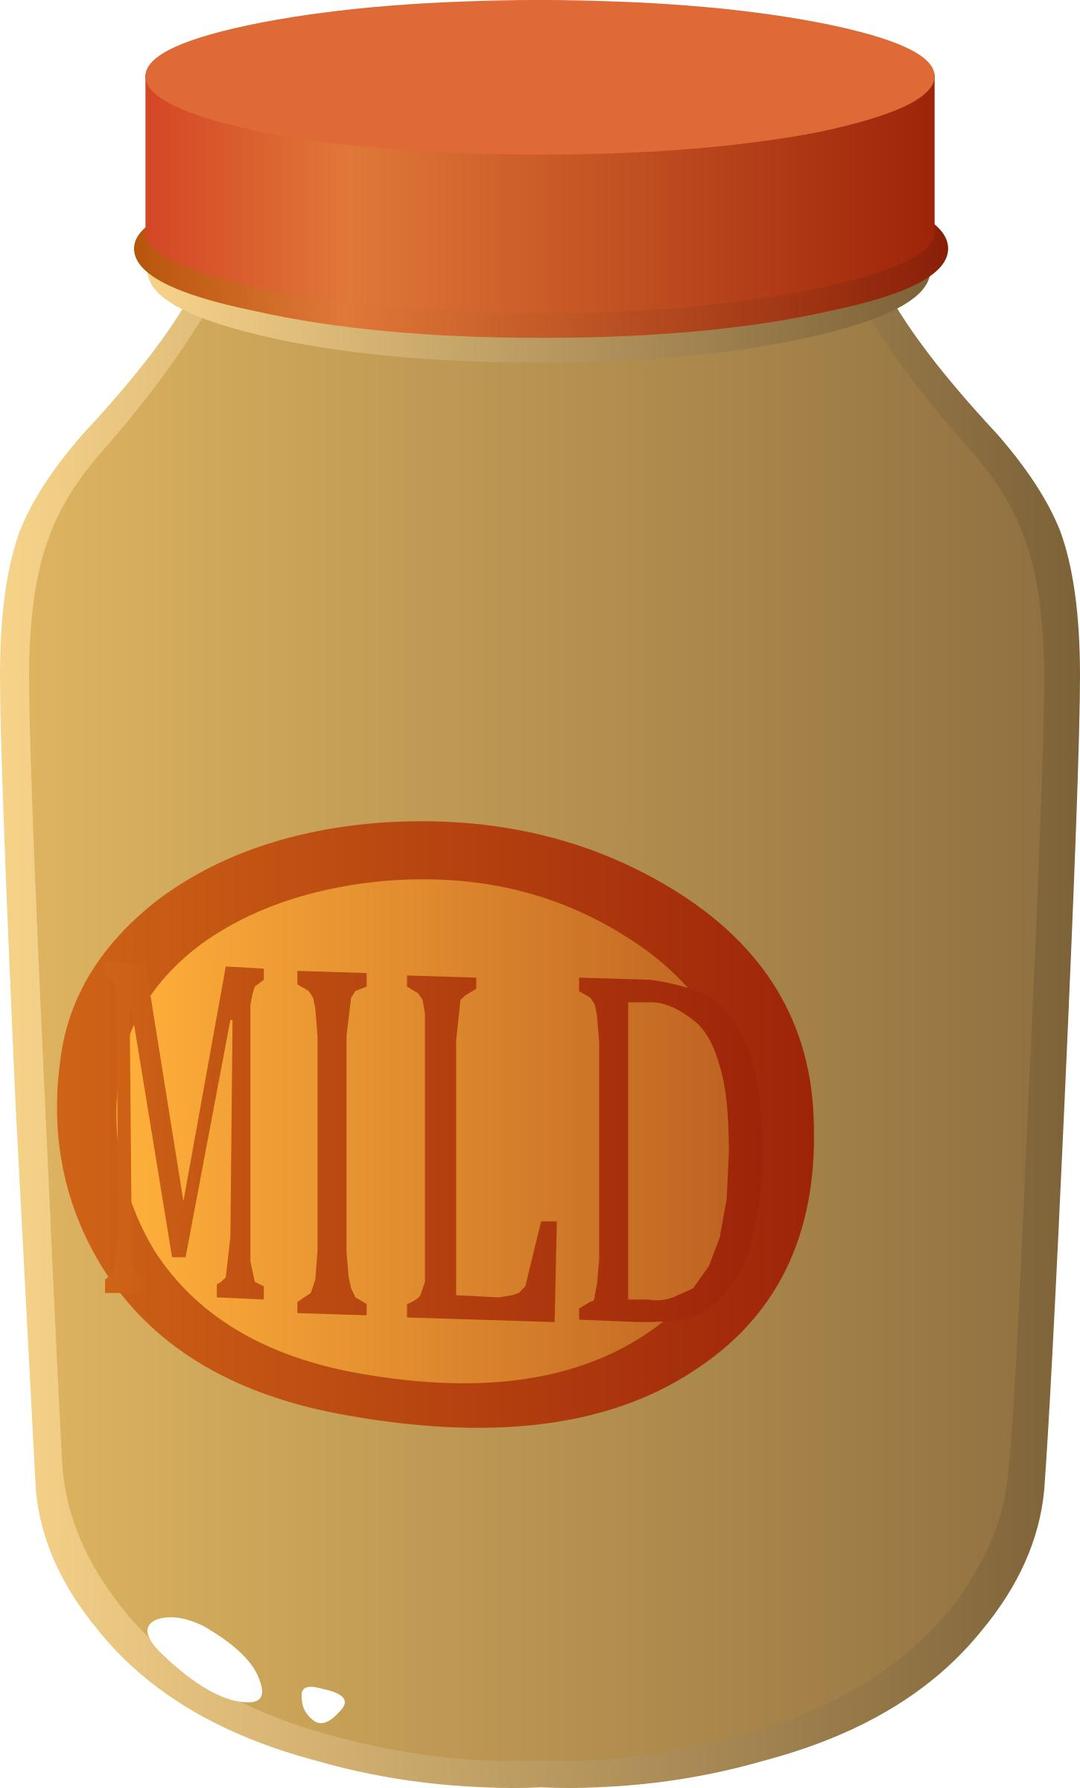 Food Mild Sauce png transparent